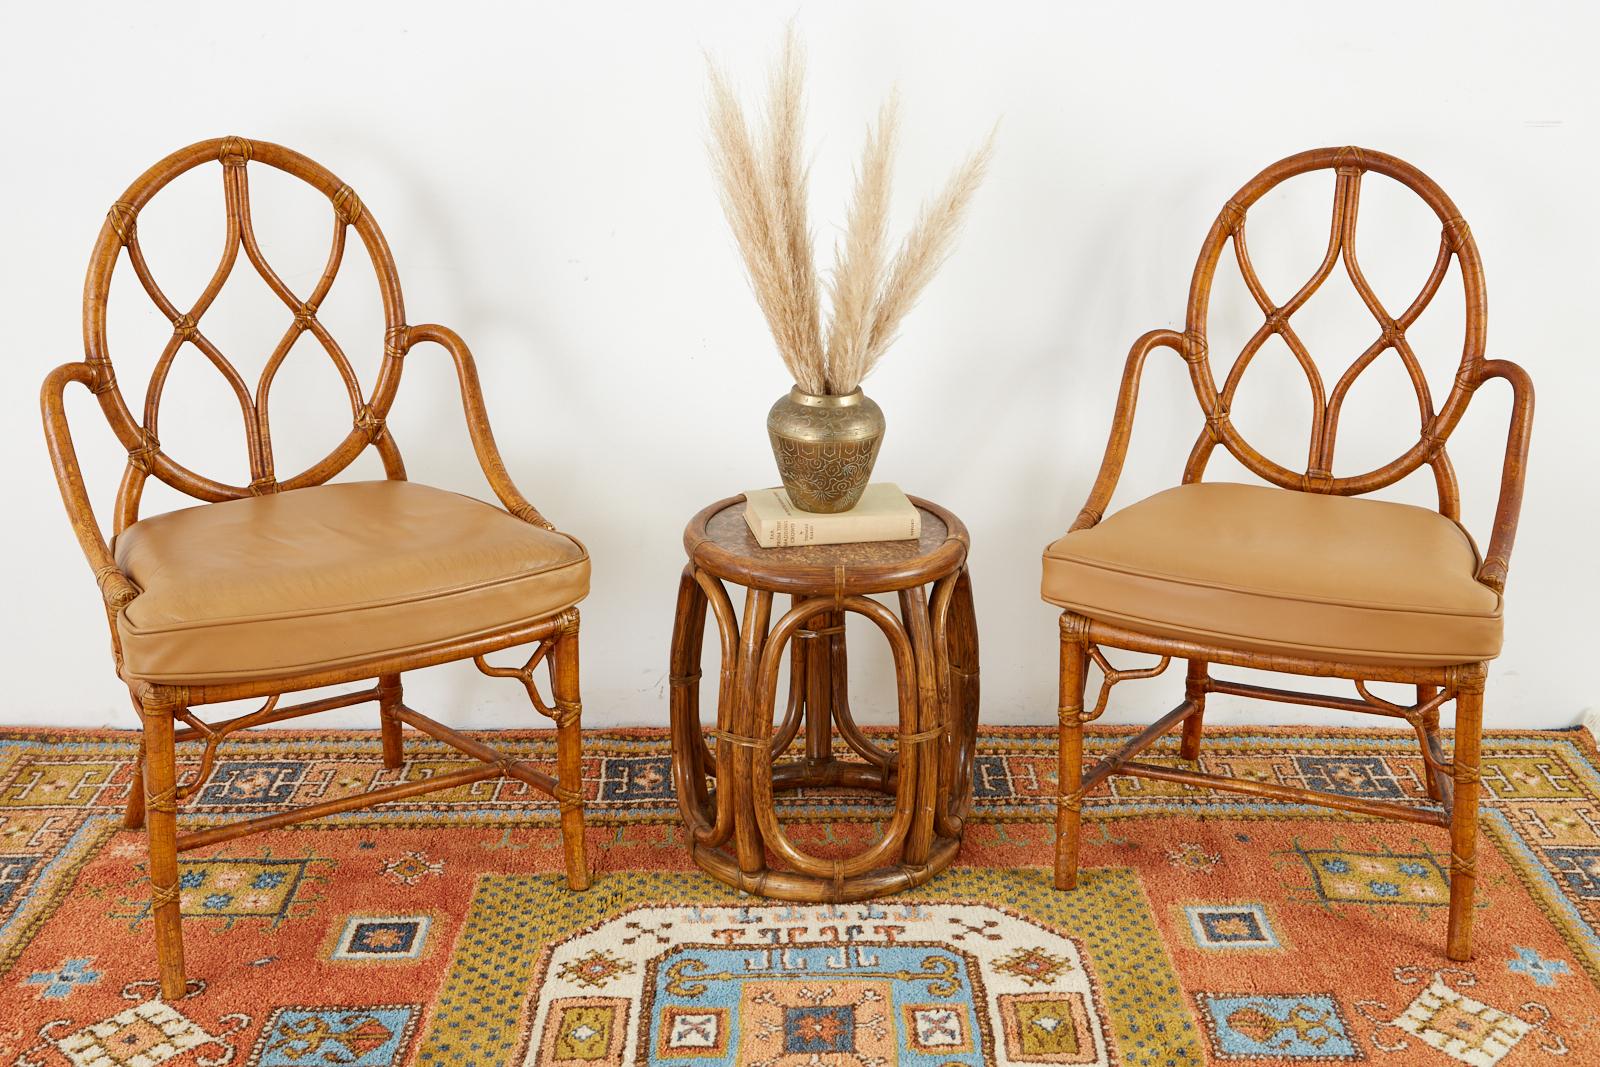 Hübsches Paar Bambus-Rattan-Esszimmerstühle im kalifornischen organisch-modernen Stil von McGuire San Francisco. Die Stühle haben eine runde Rückenlehne mit anmutig geschwungenen Armlehnen:: die mit einem Sitz aus Rohrgeflecht und einem dicken